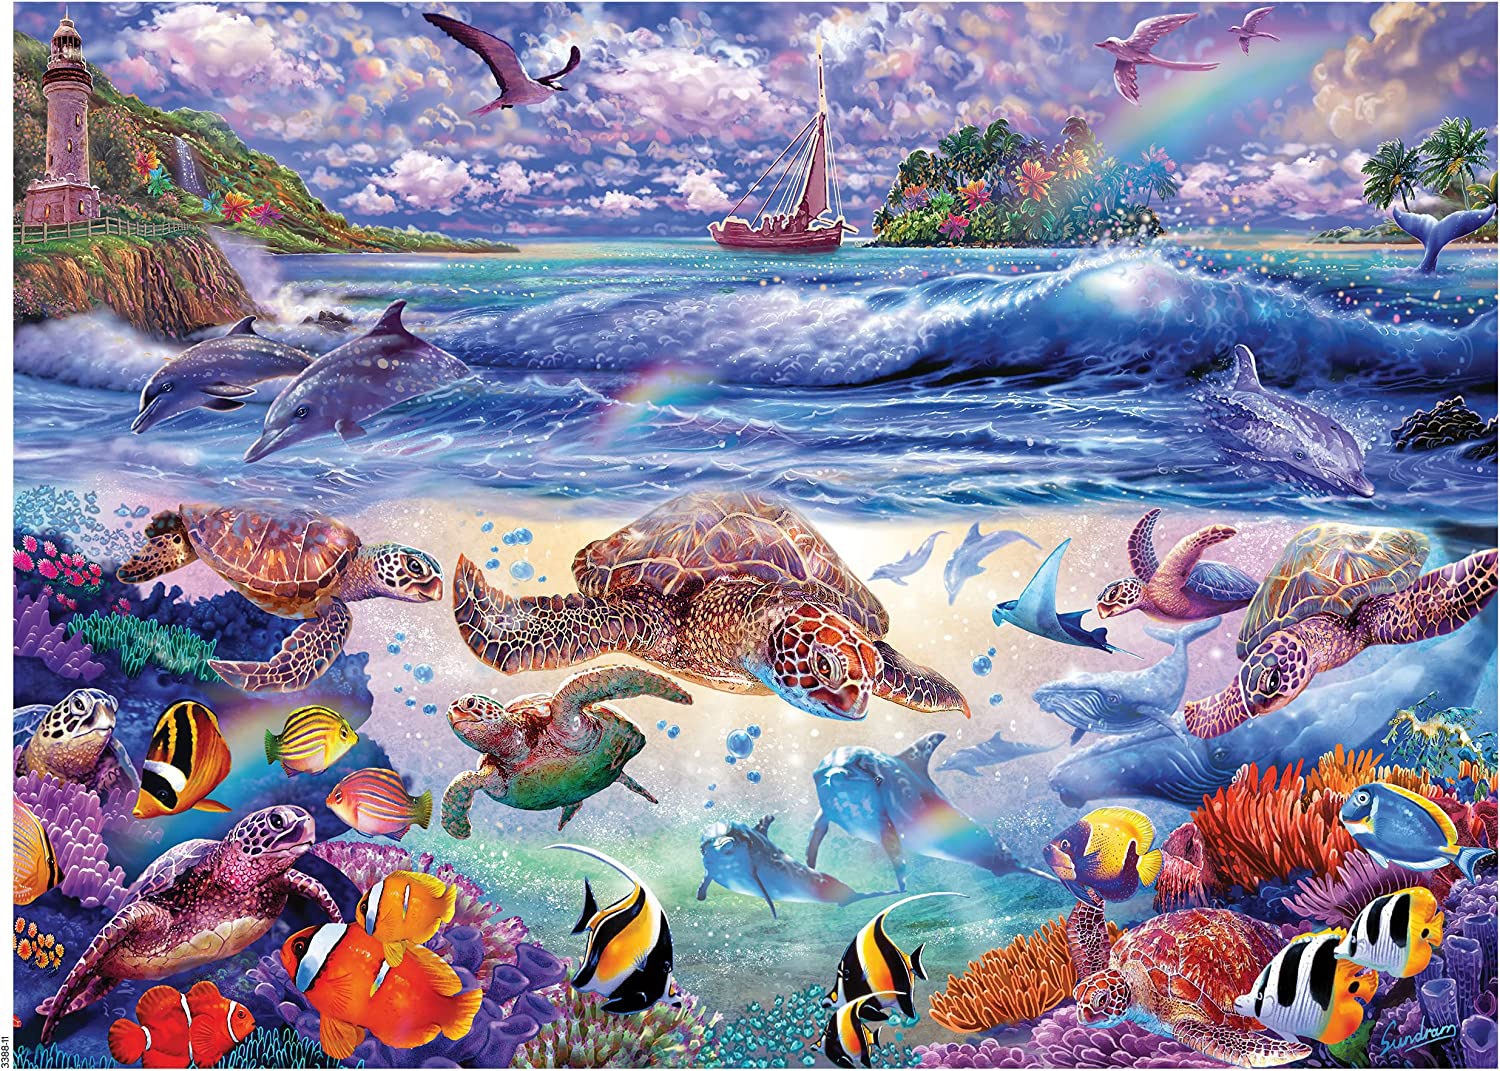 Ocean Magic - Turtles Galore